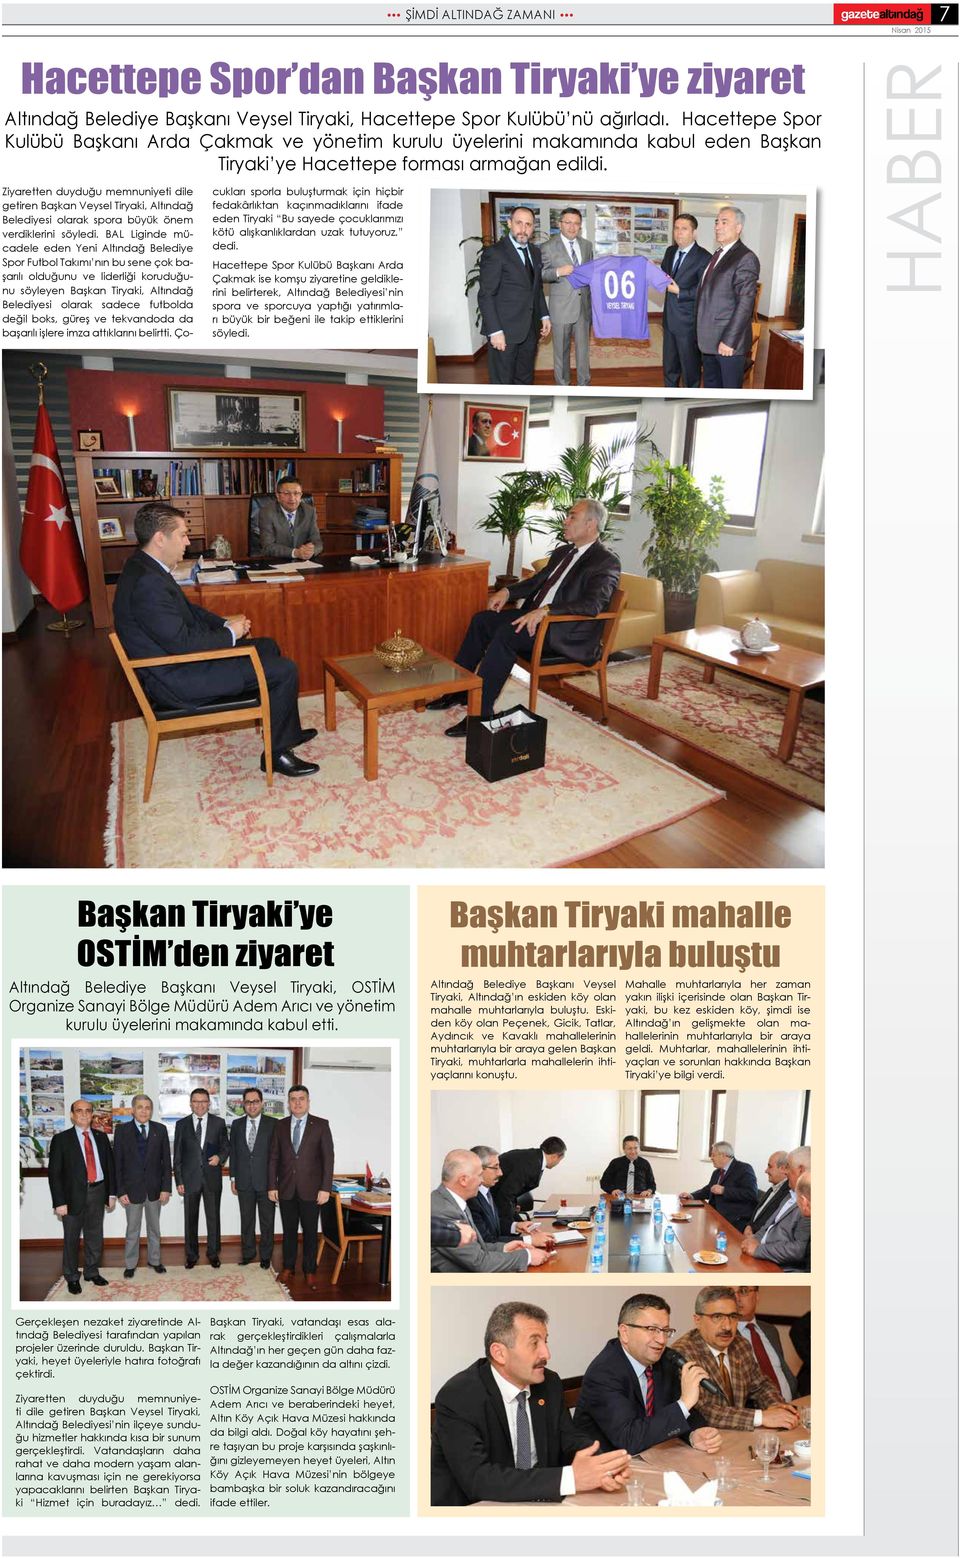 Ziyaretten duyduğu memnuniyeti dile getiren Başkan Veysel Tiryaki, Altındağ Belediyesi olarak spora büyük önem verdiklerini söyledi.